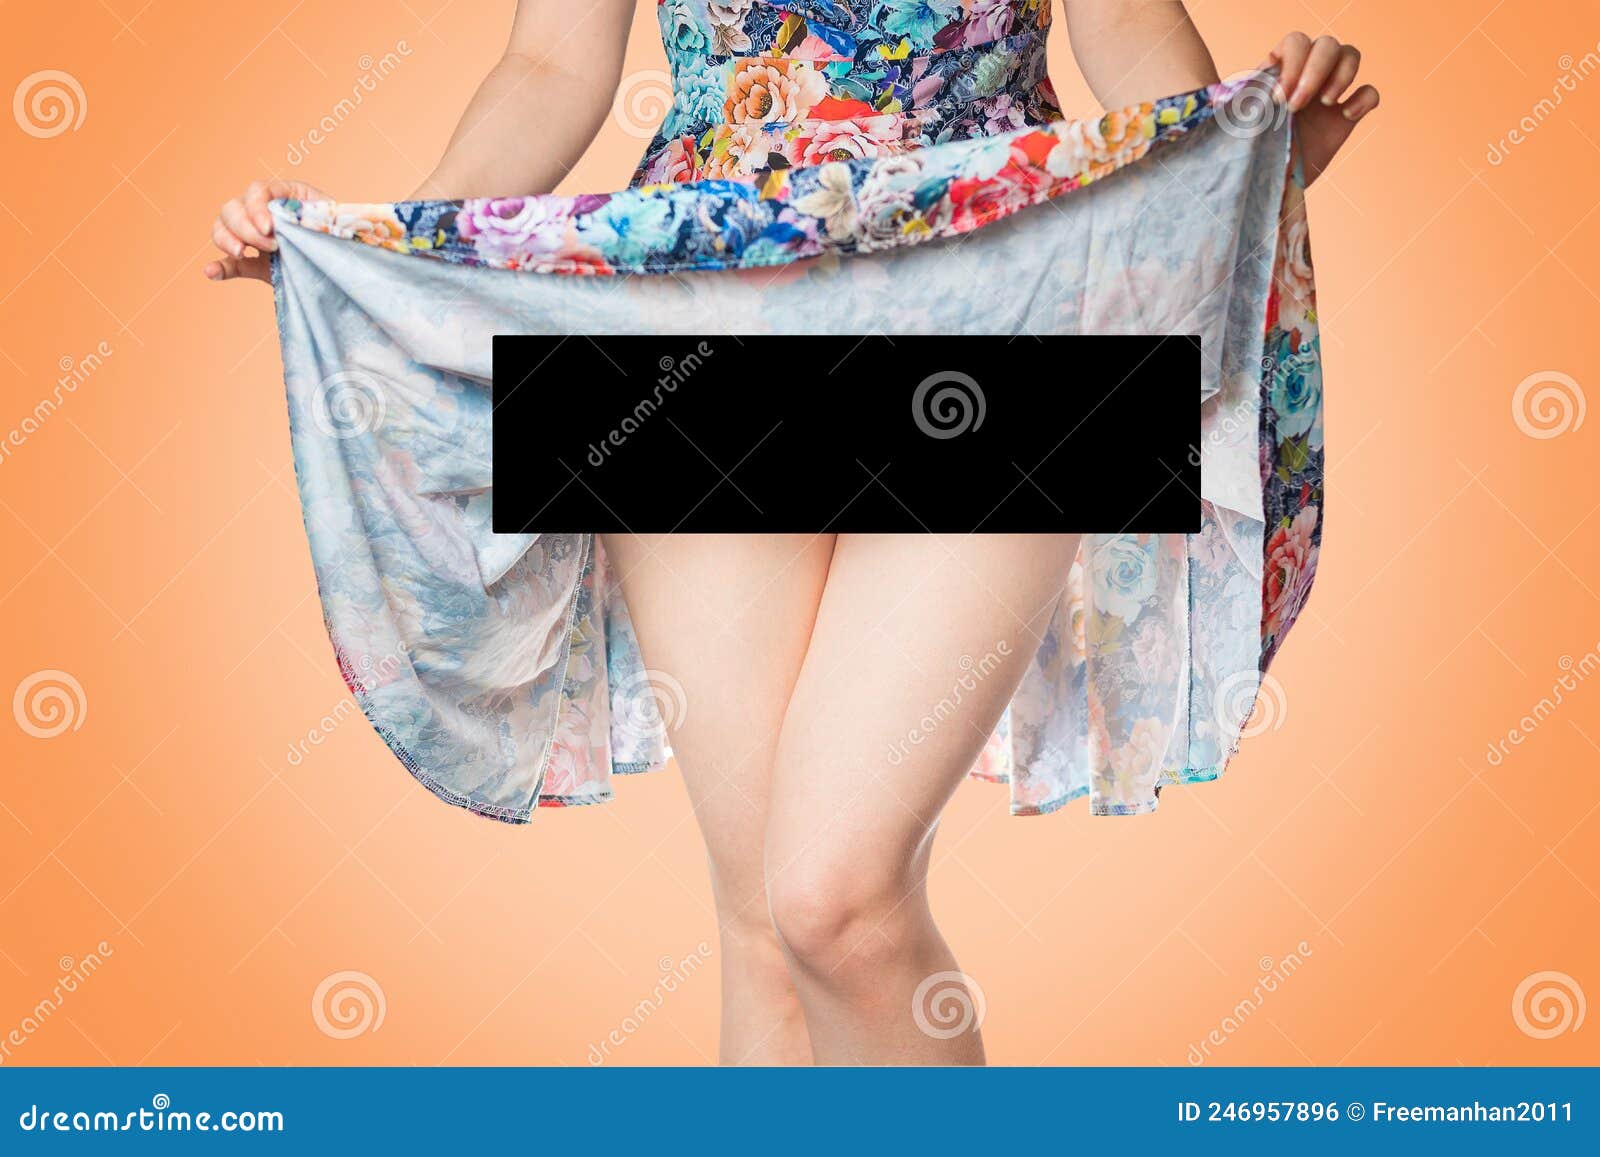 donna abbott share lifting up her skirt photos